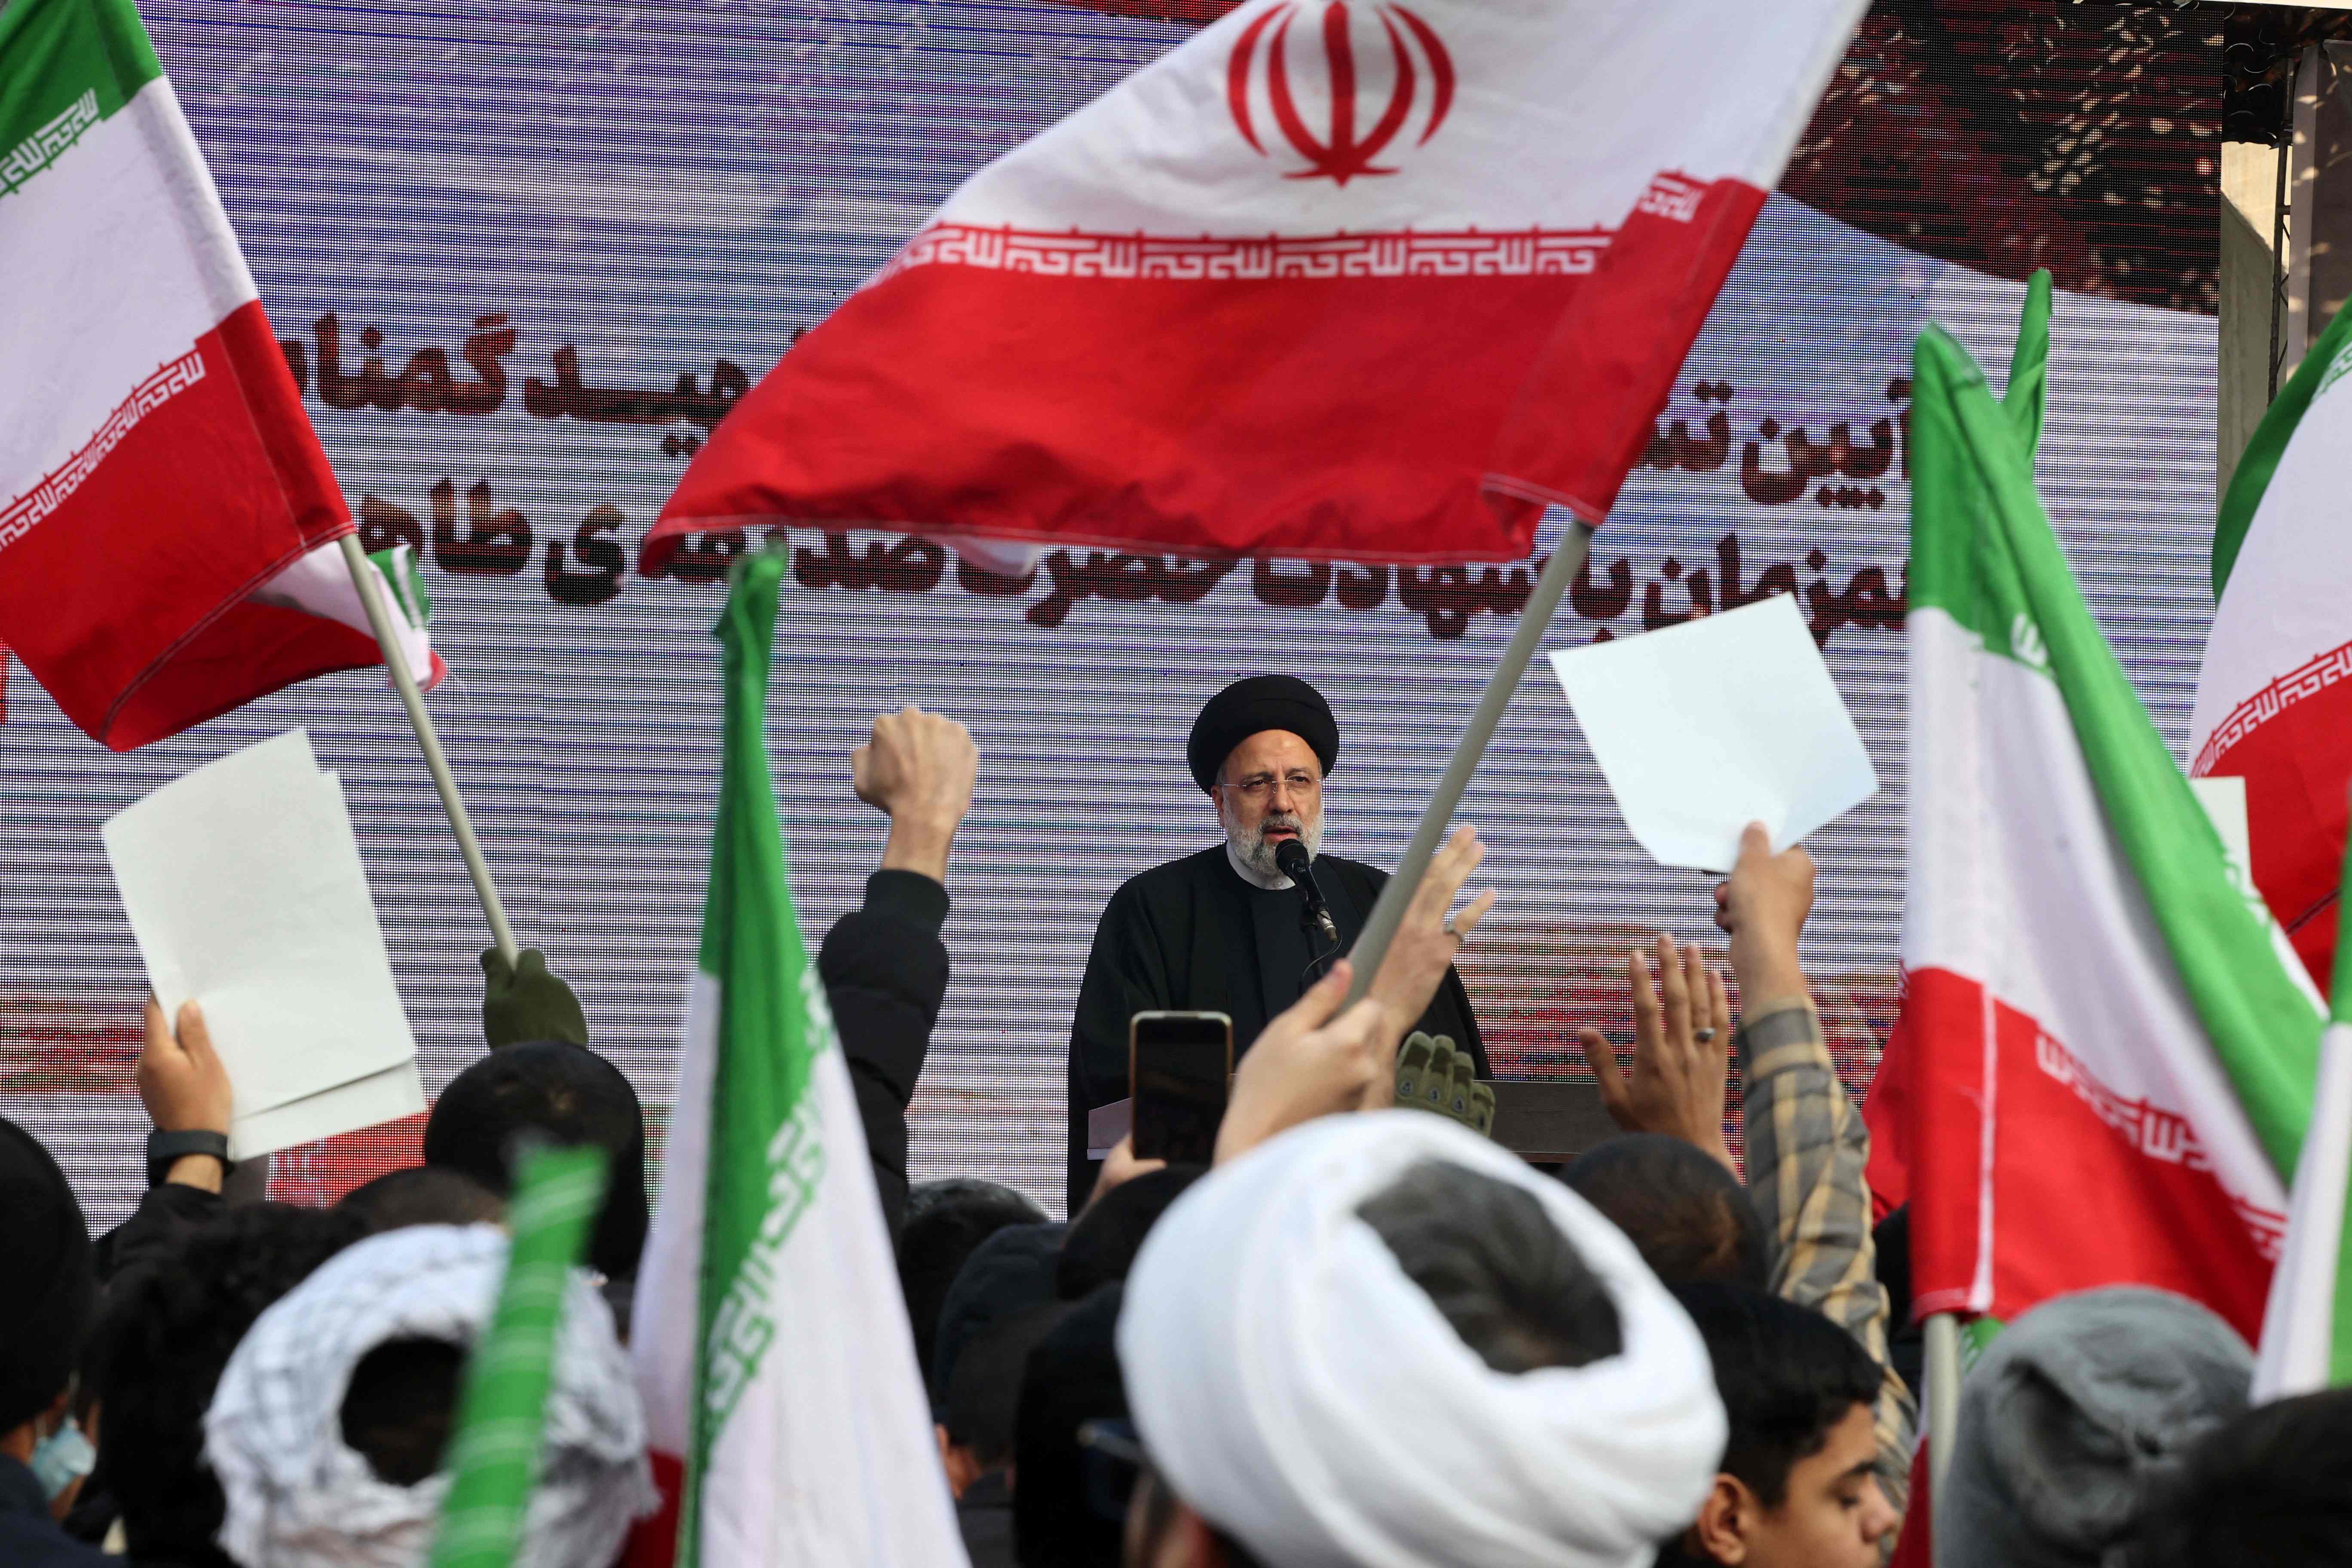 "No habrá piedad" para enemigos de la República Islámica, afirma presidente de Irán